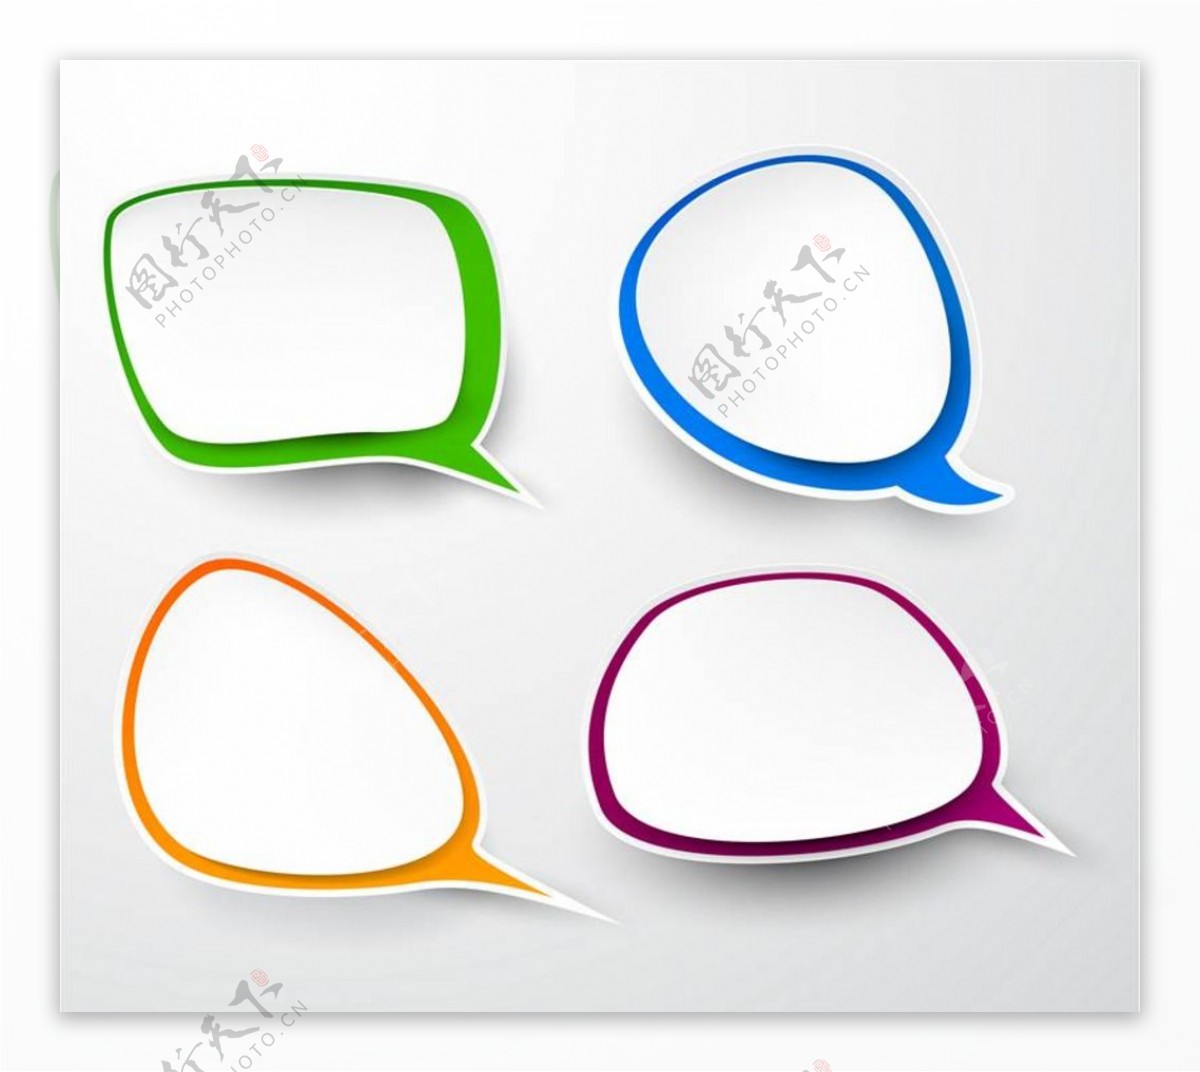 对话框对话窗对话栏图片